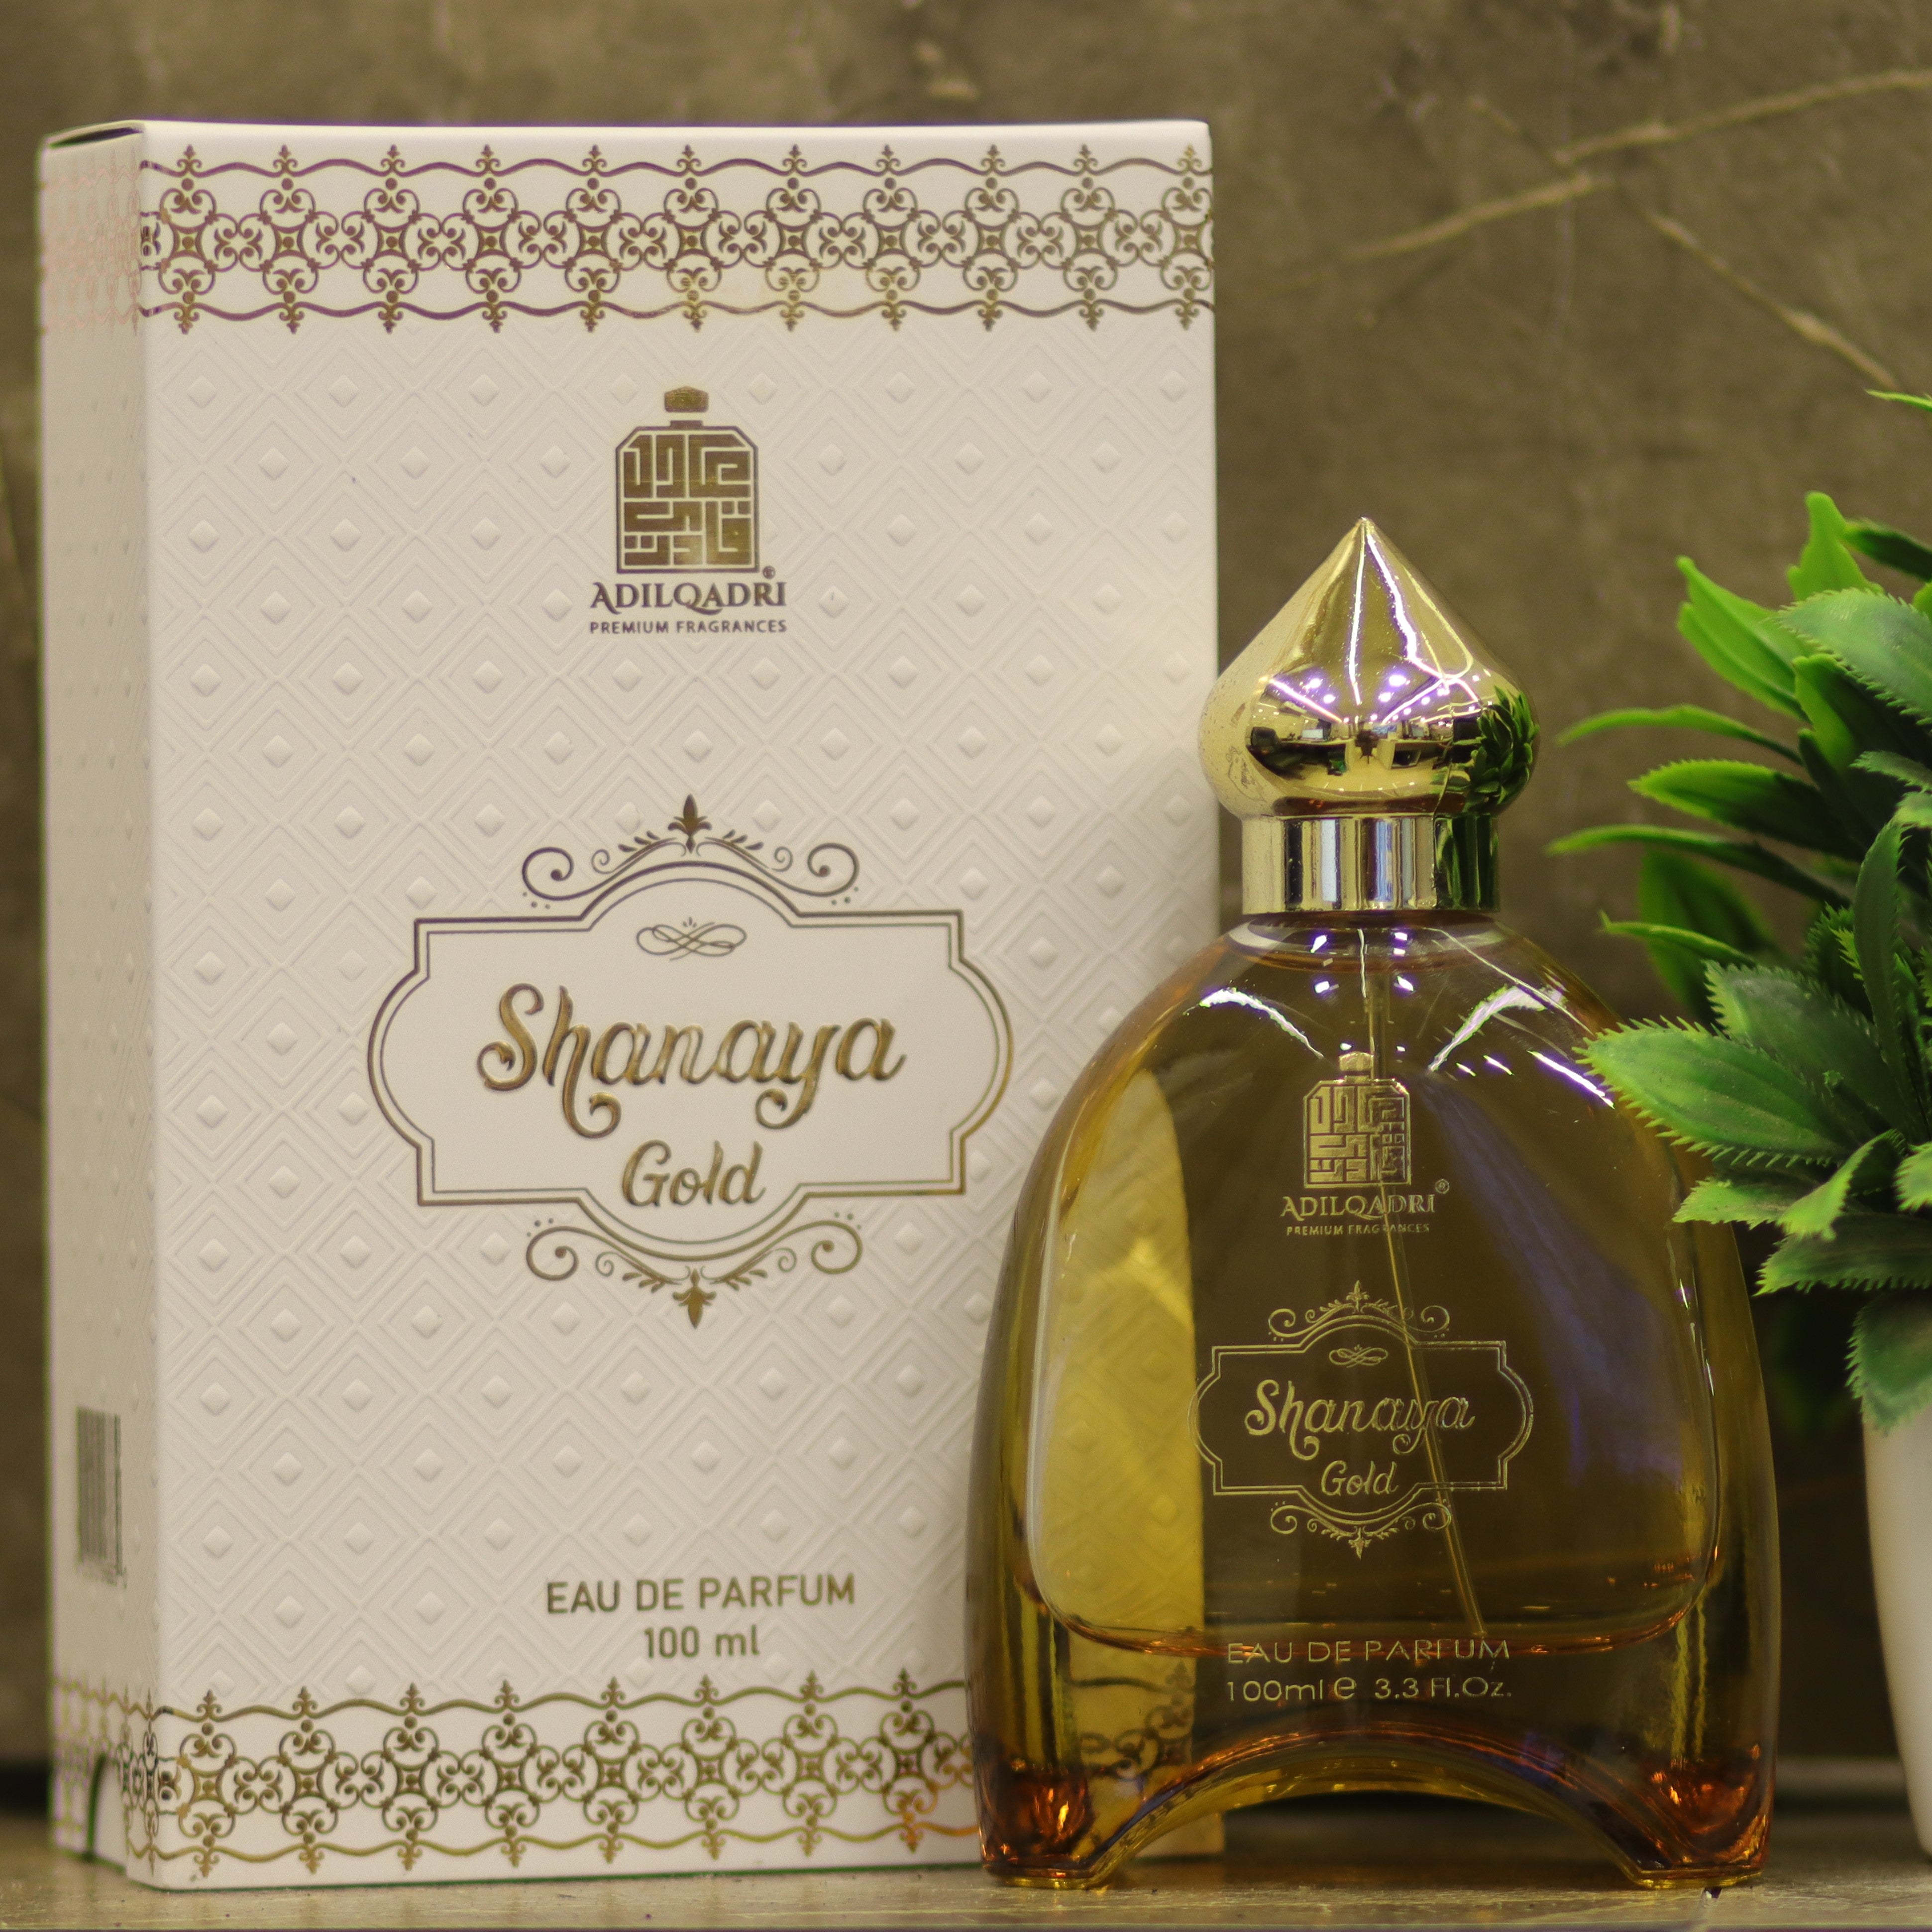 Shanaya Gold Perfume Spray